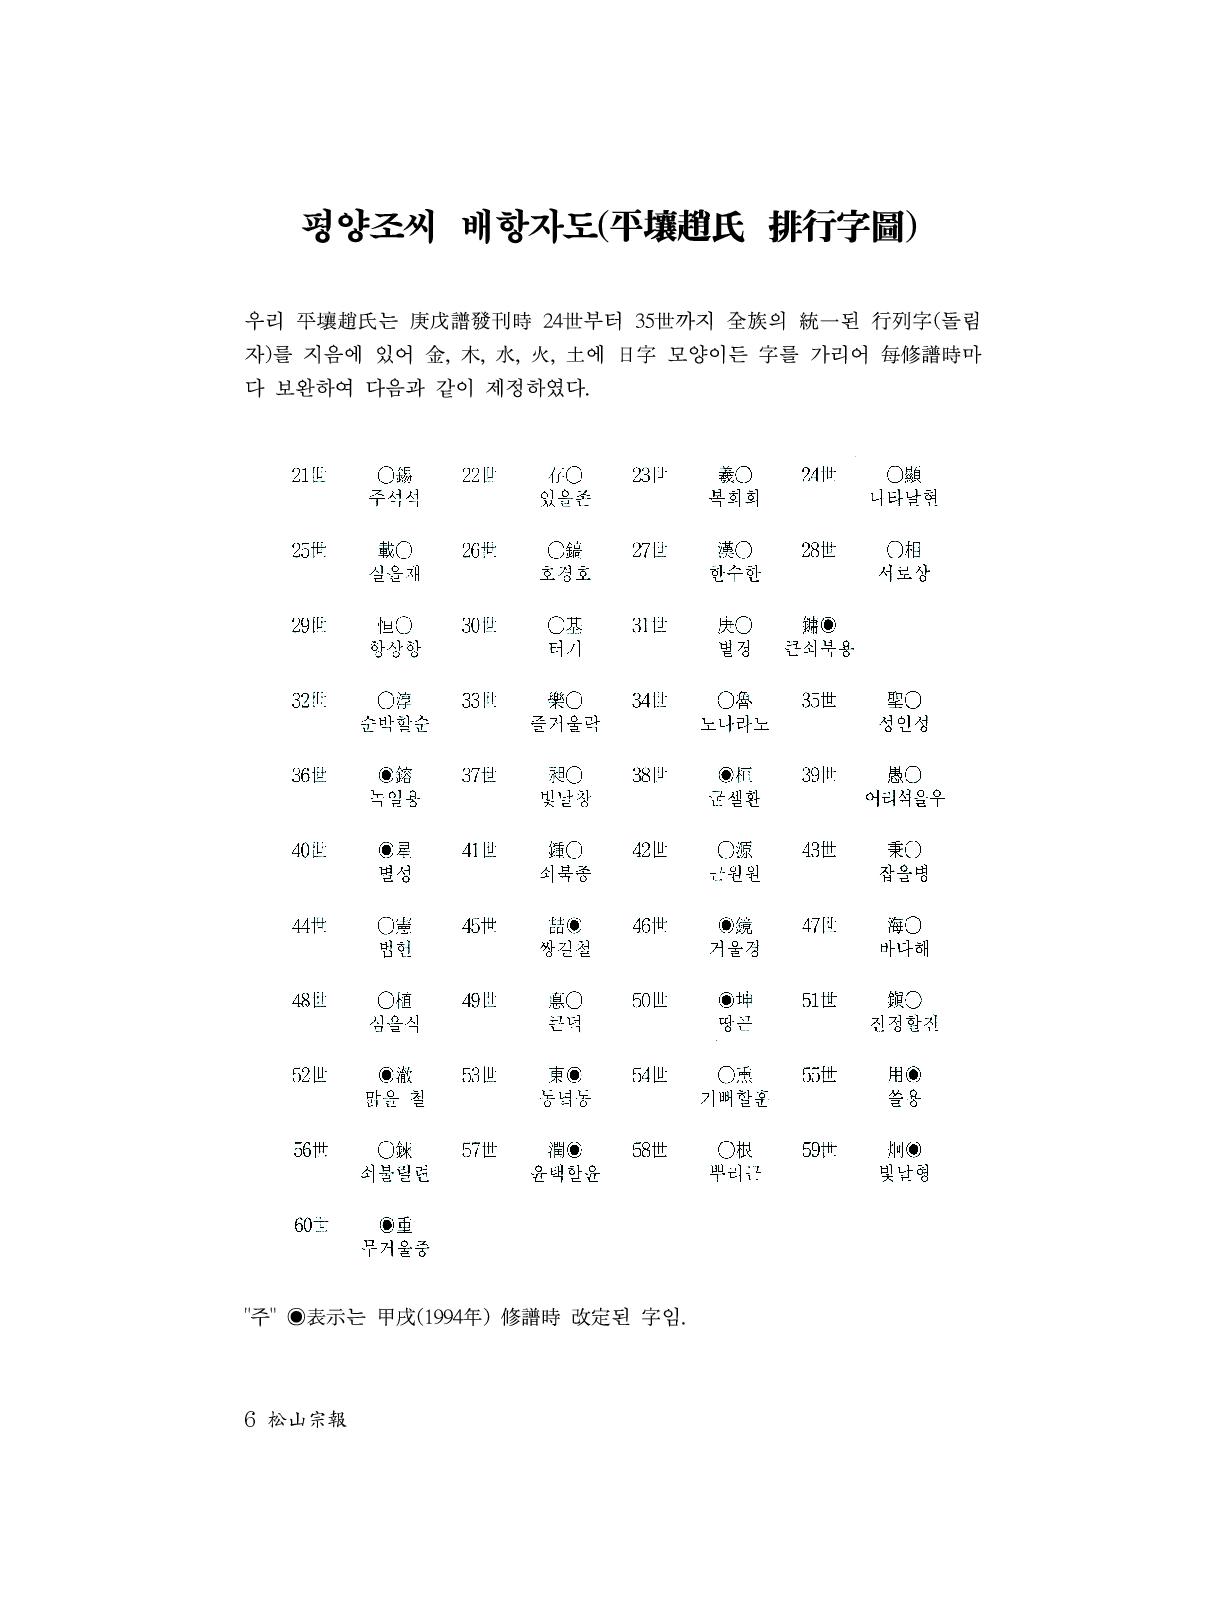 (전체) 송산종보(27호)(최종)_7.jpg